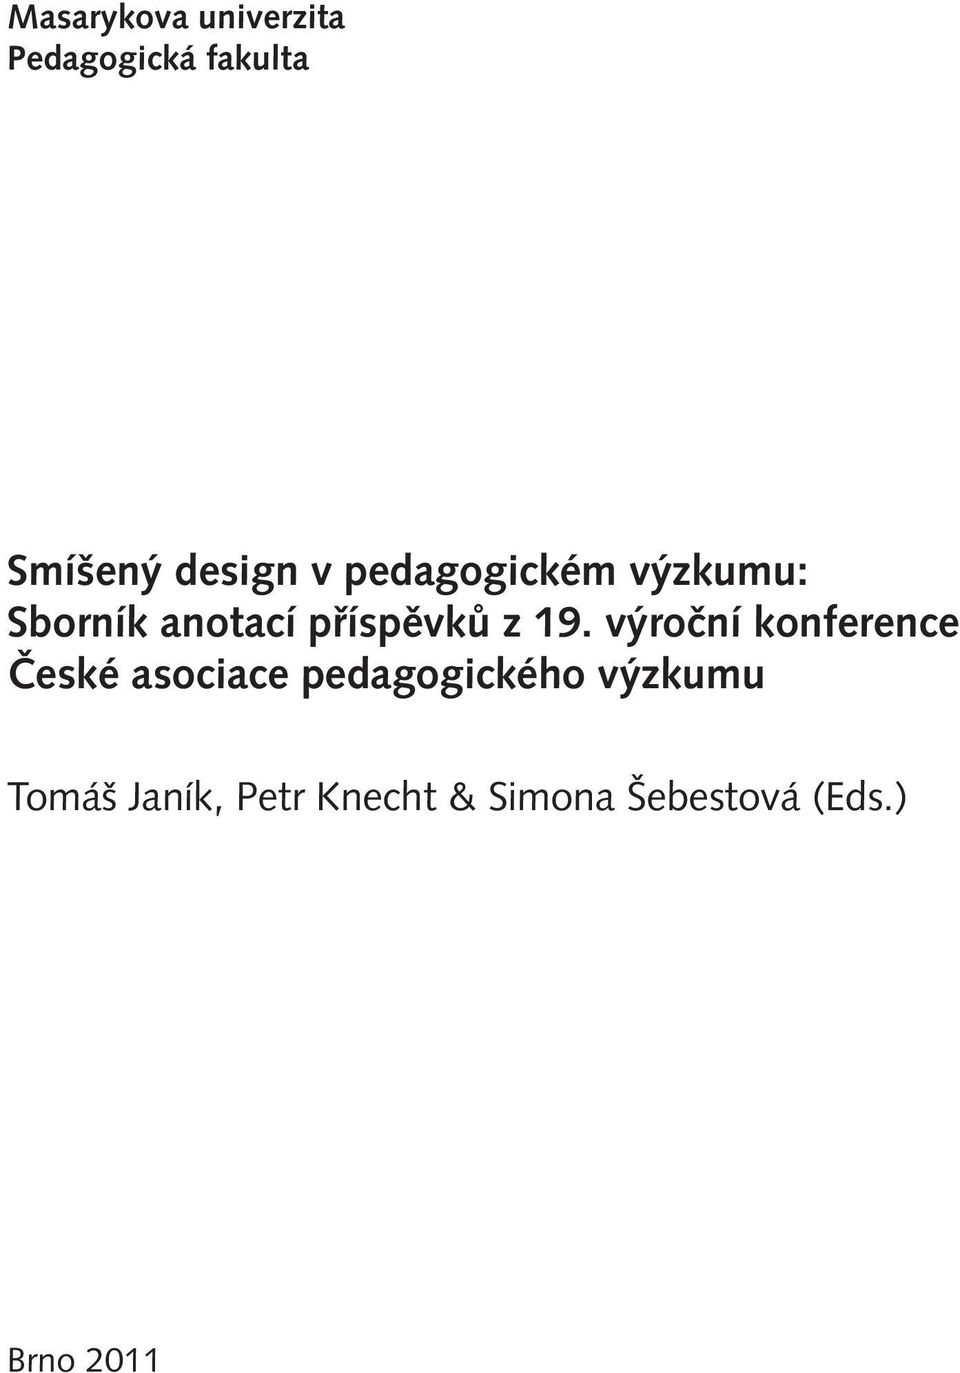 výroční konference České asociace pedagogického výzkumu